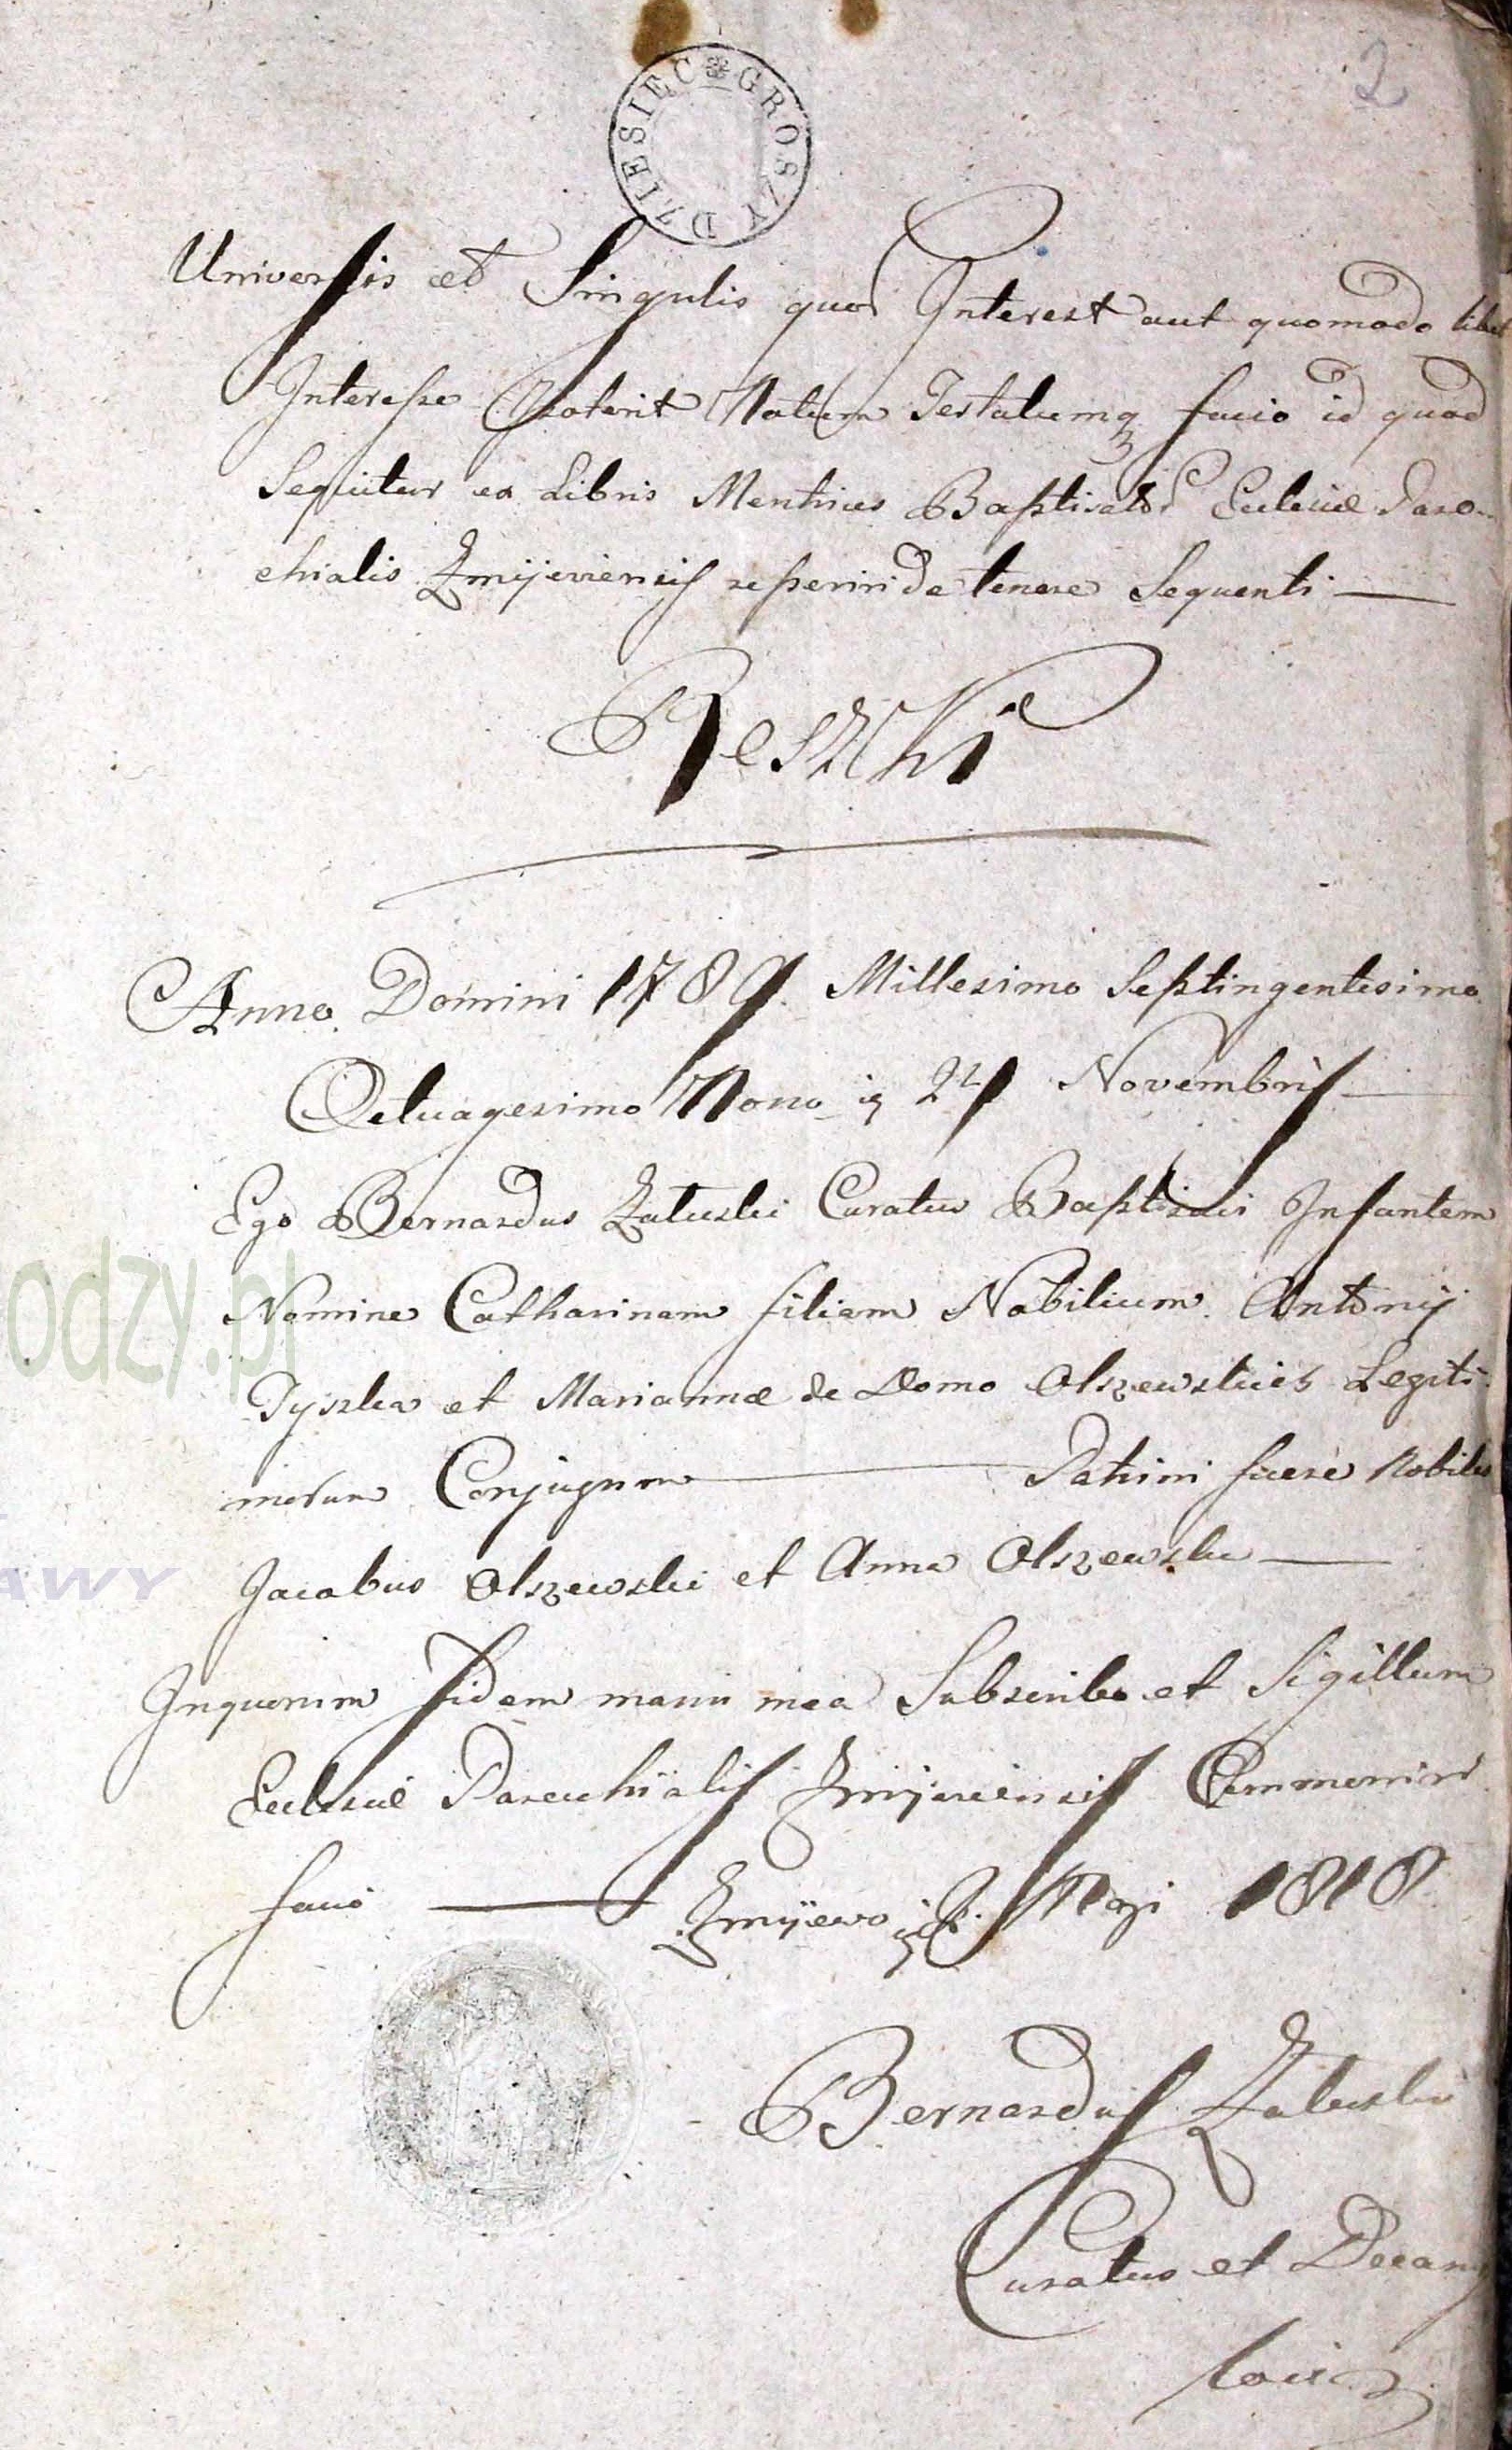 Katarzyna Tyszka Birth Cerifcate 1789 in 1818.jpg